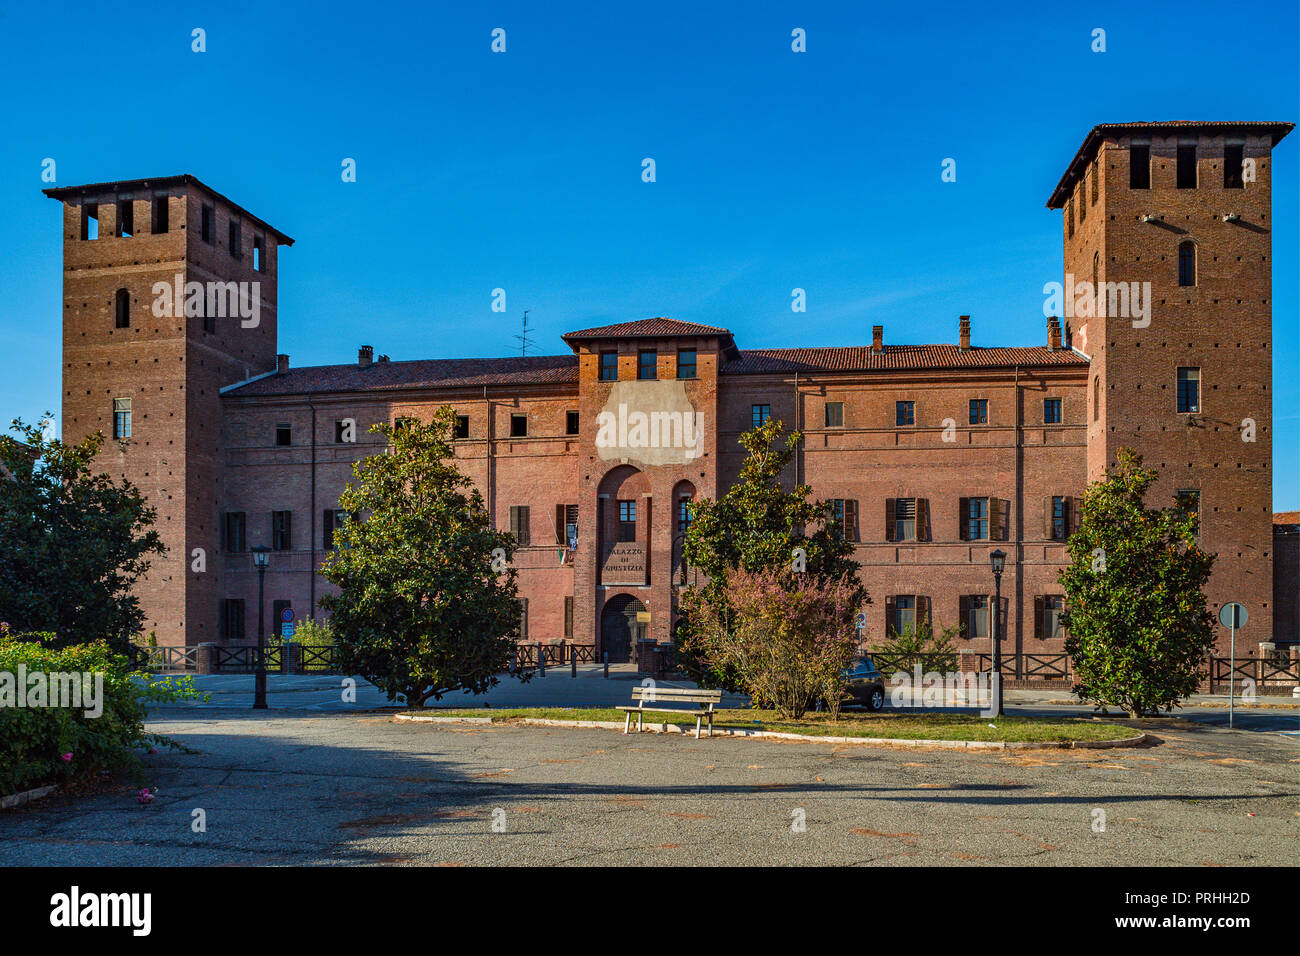 Italy Piedmont Vercelli Beato Amedeo castle, court, Stock Photo